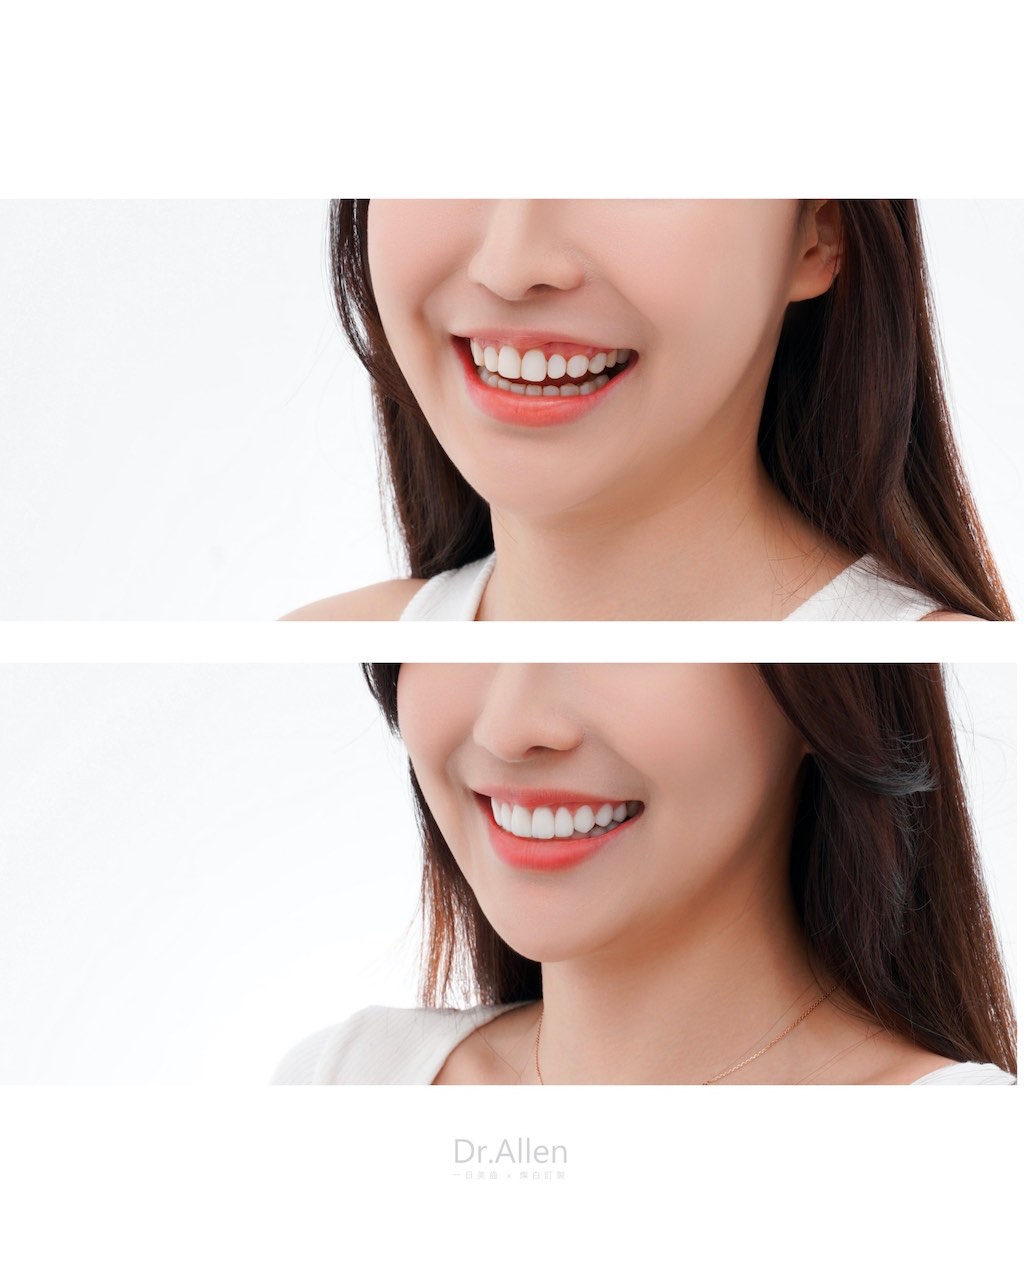 陶瓷貼片-牙齒黃-笑齦-牙齦整形-療程前後笑容比較-吳國綸醫師-台中